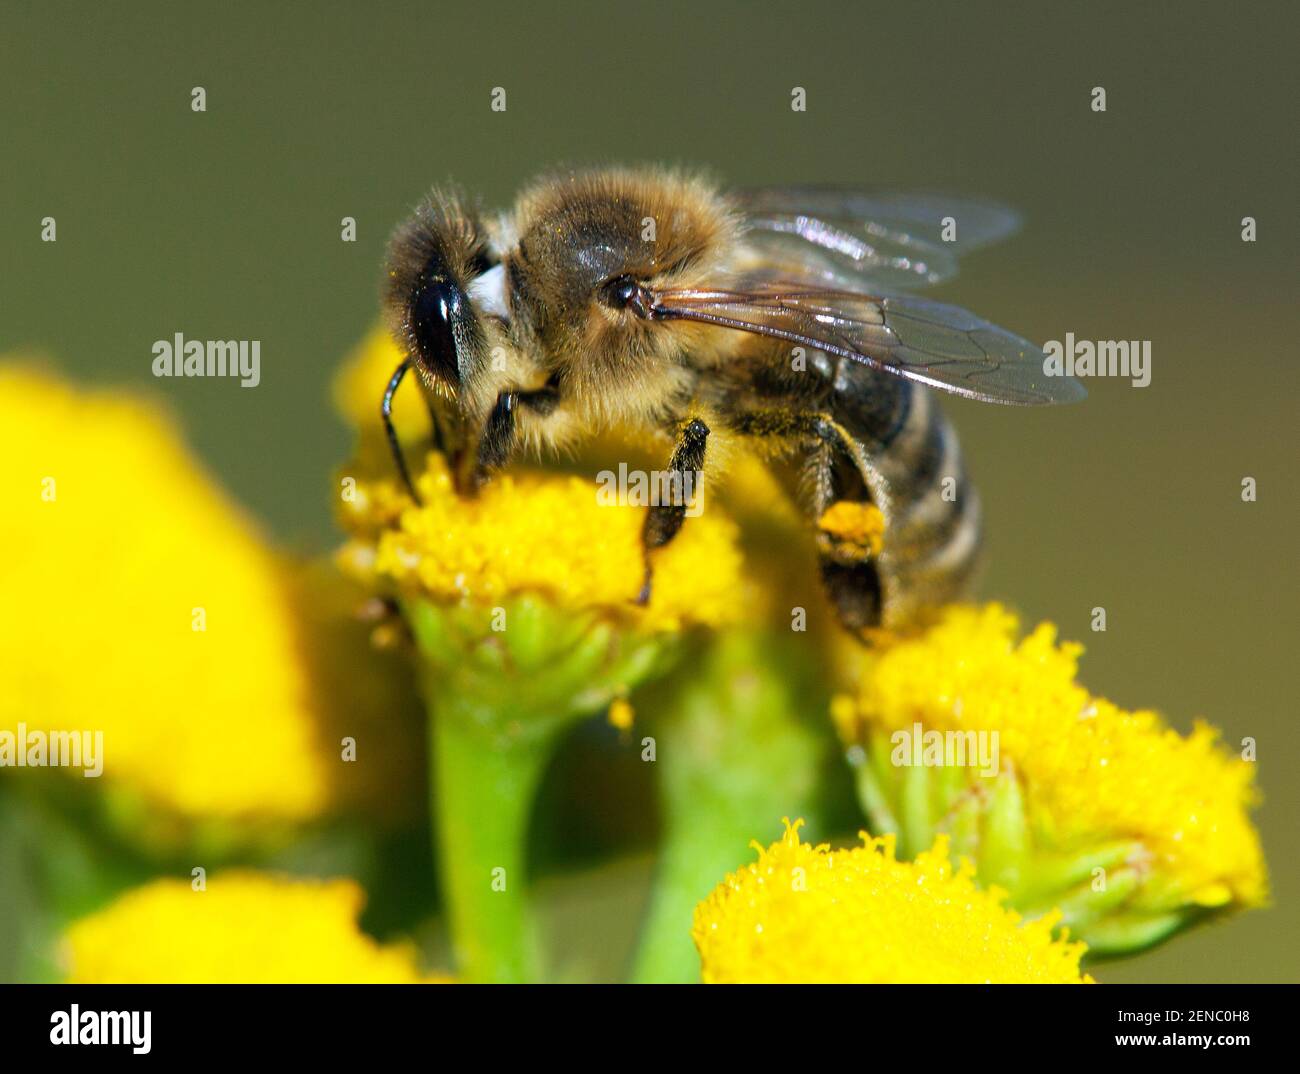 Detail der Biene oder Honigbiene in Latein APIs Mellifera, europäische oder westliche Honigbiene bestäubt von der gelben Blume Stockfoto